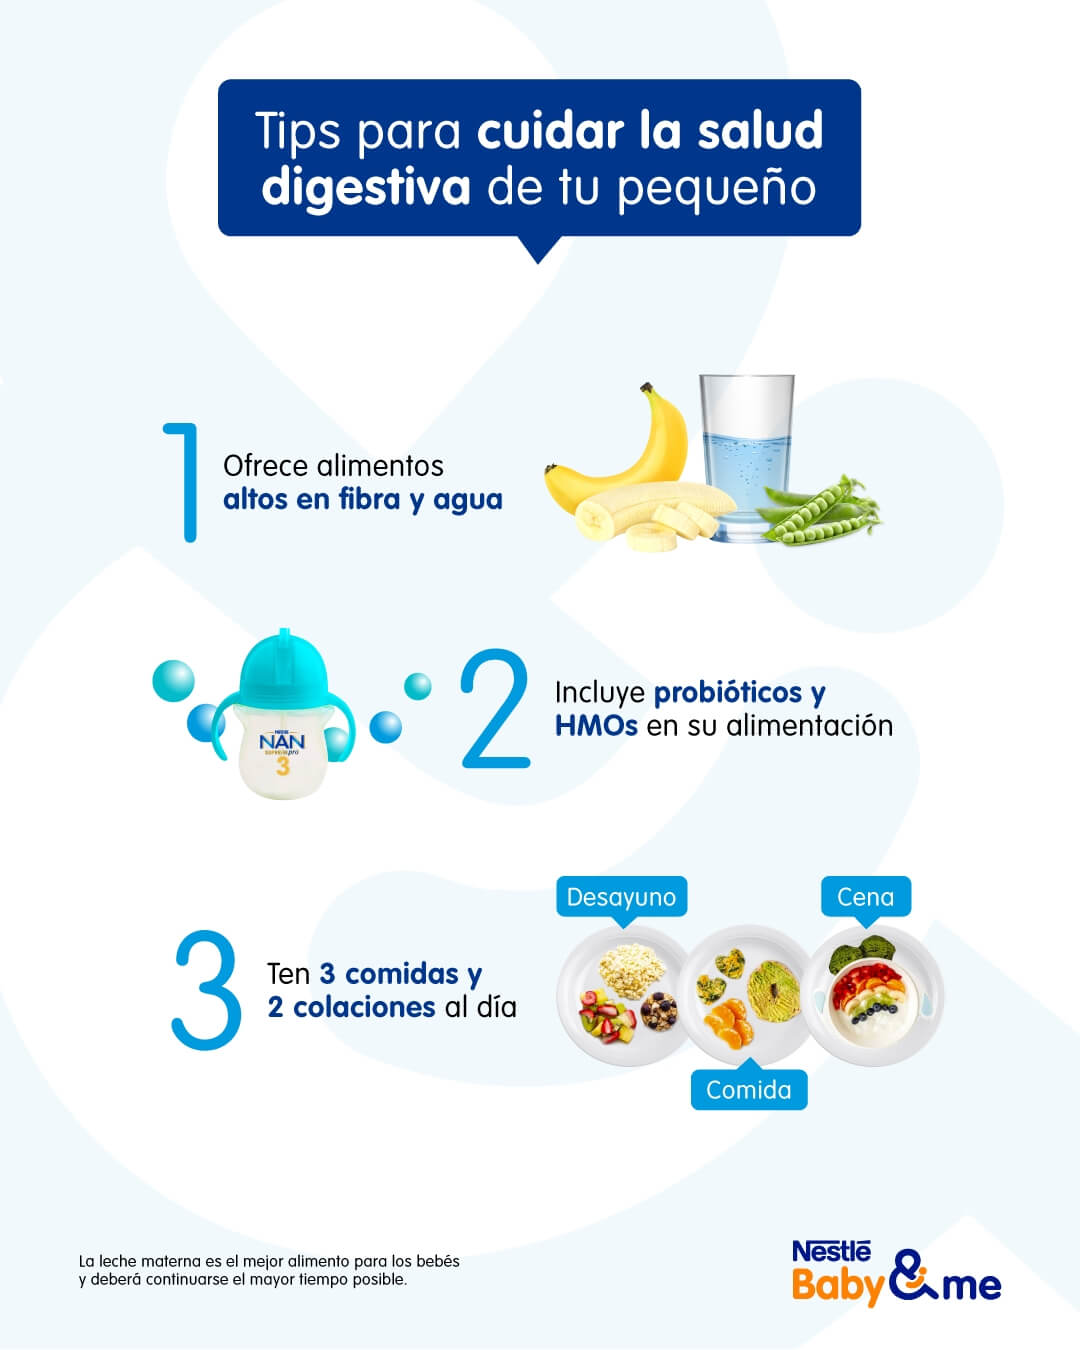 5 tips para cuidar la salud digestiva de tu pequeño